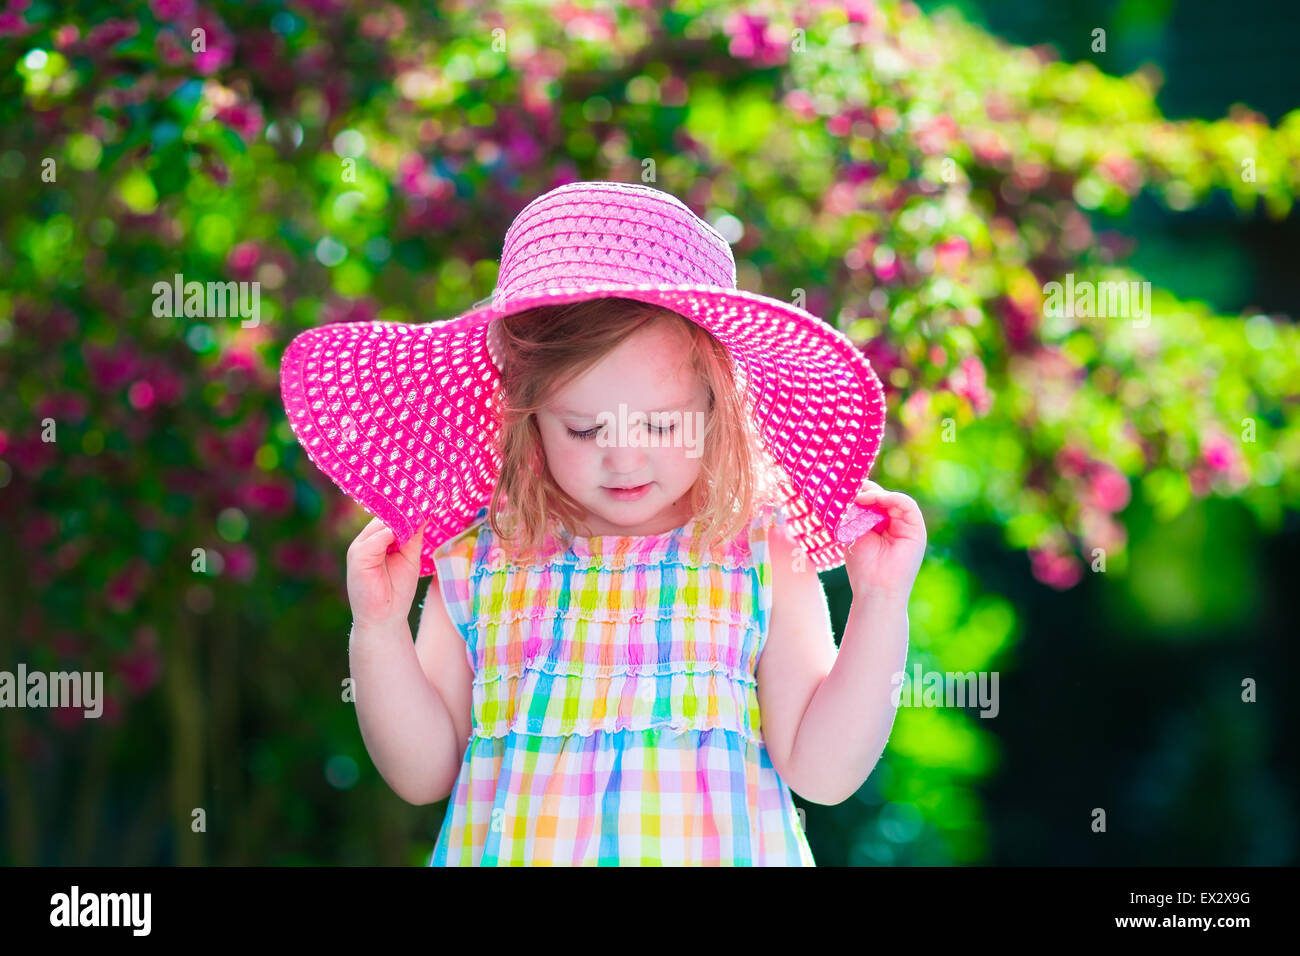 Kleine süße Mädchen mit Blumen. Kind einen rosa Hut spielen in einem blühenden Sommer Garten. Kinder im Garten. Stockfoto